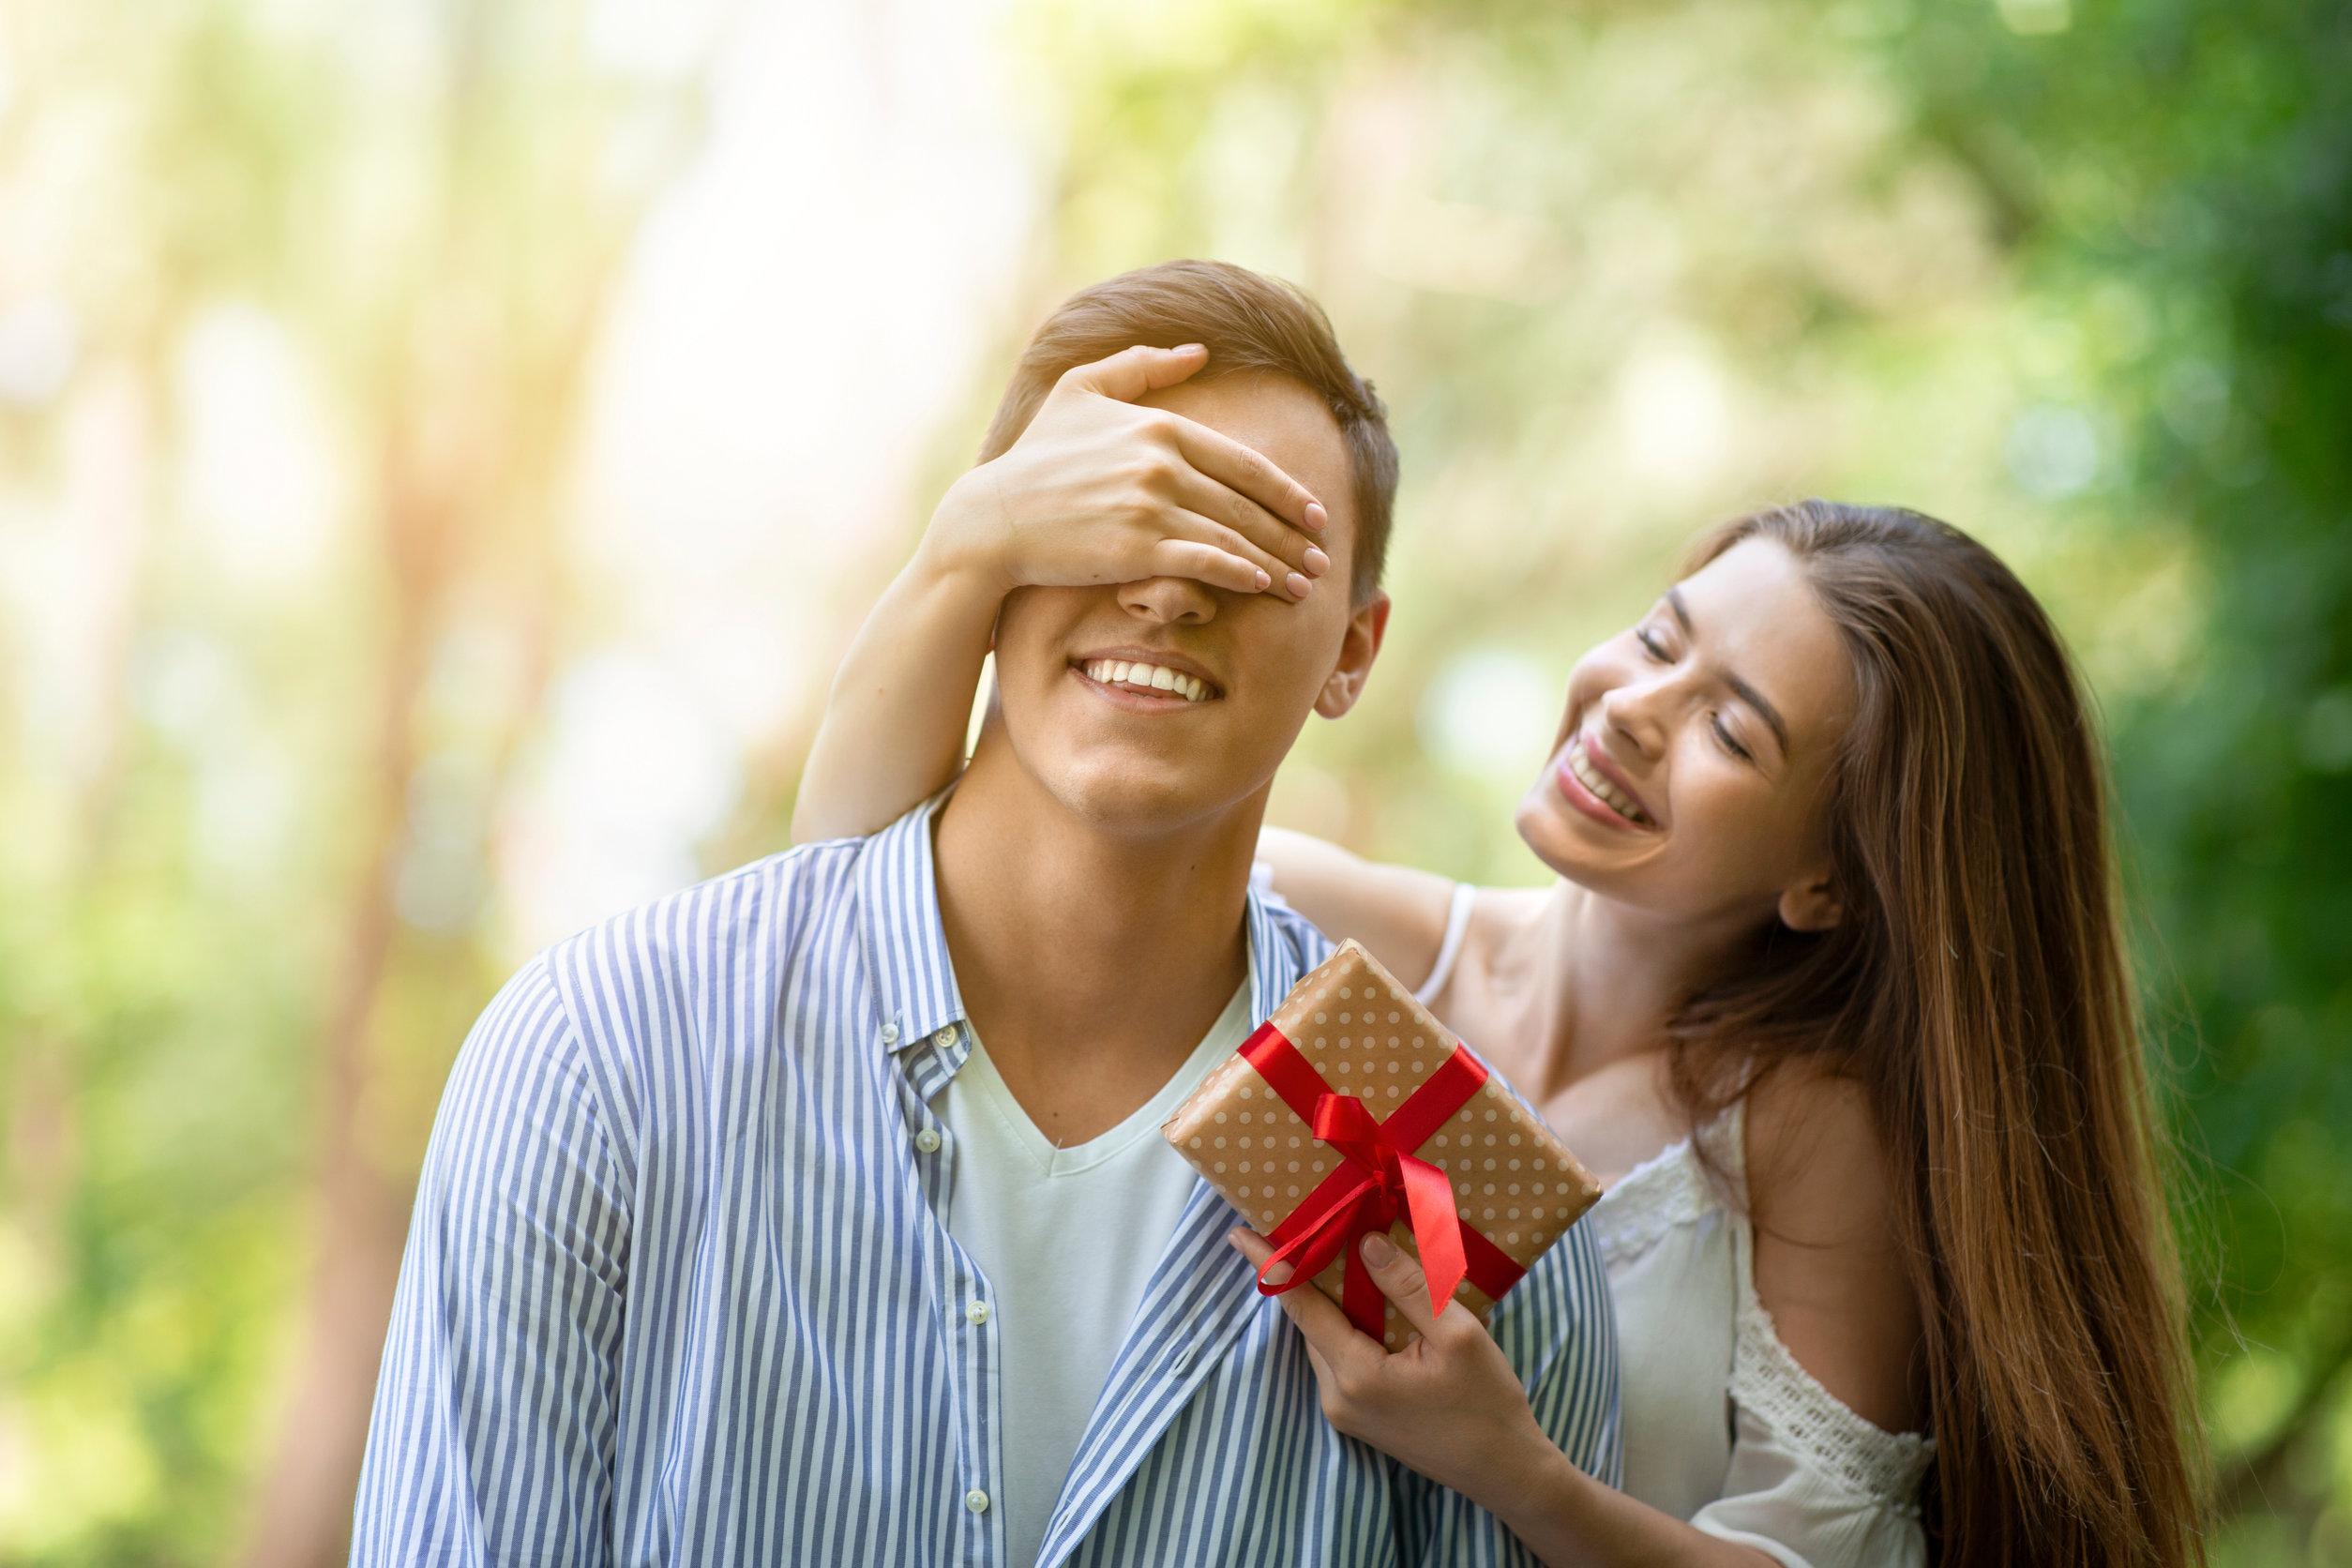 Come creare una sorpresa romantica: 5 idee folli per lui